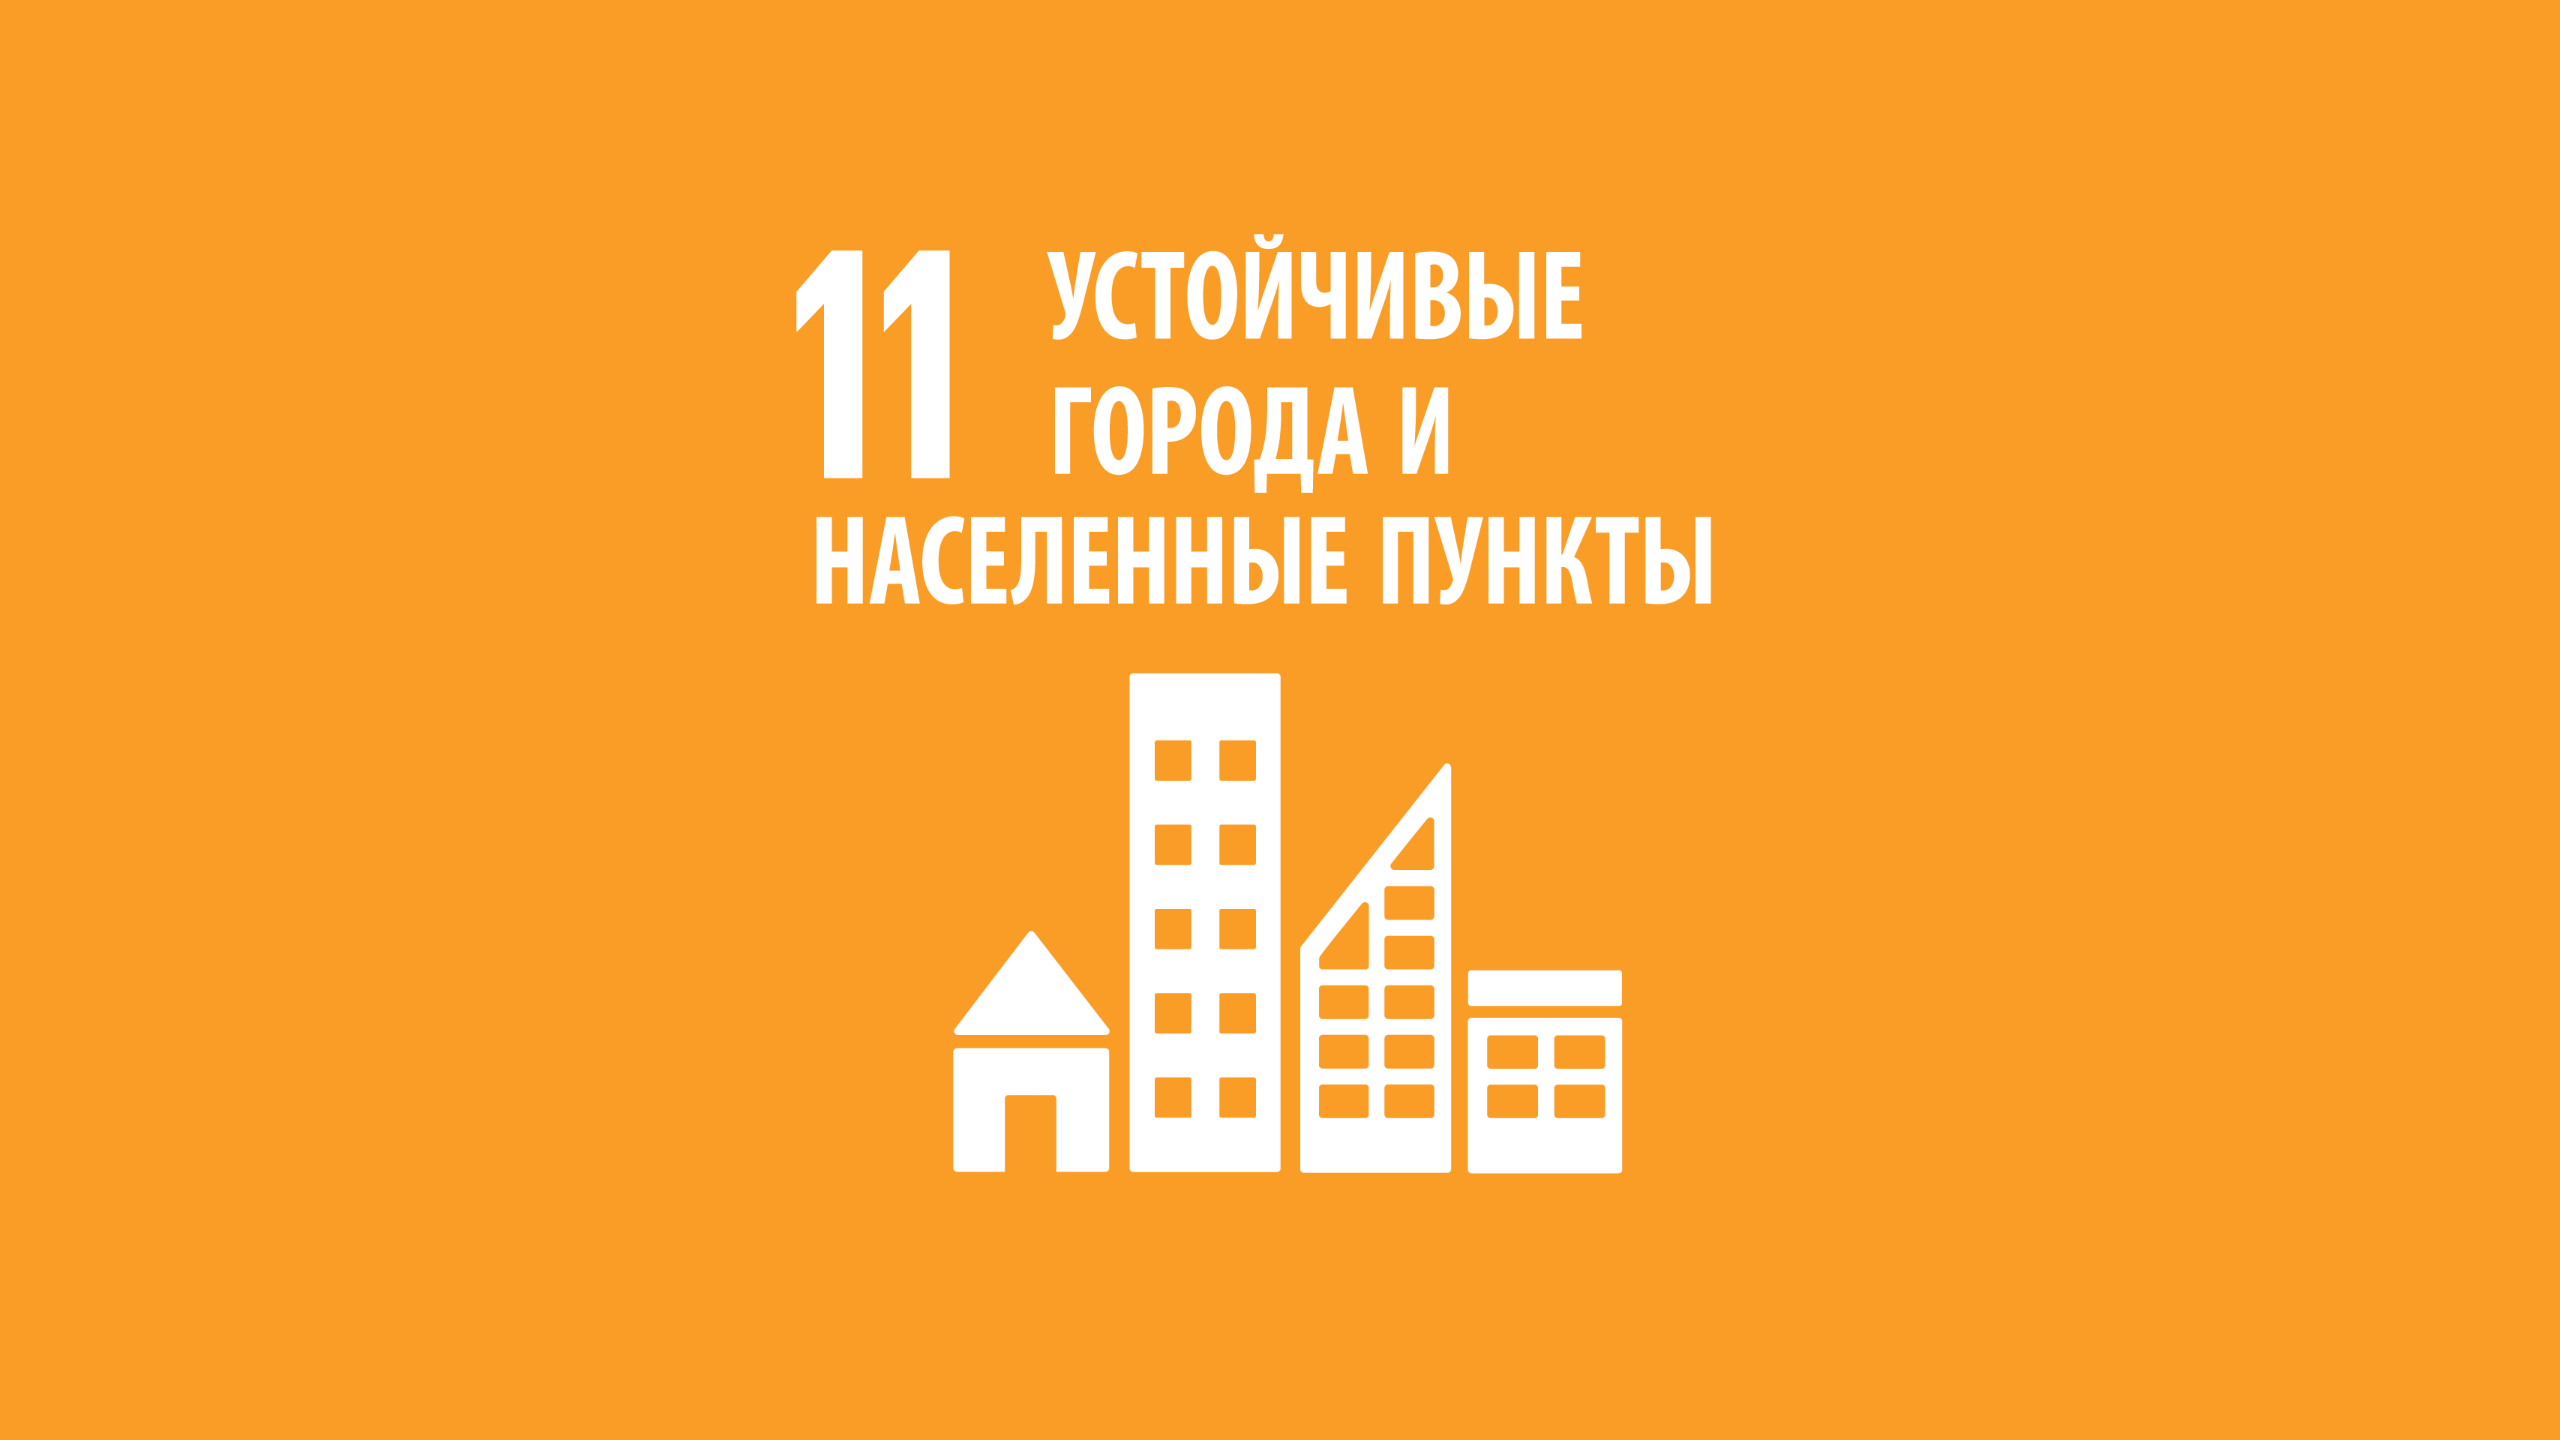 czur 11 oblozhka - ЦУР 11: Устойчивые города и населенные пункты